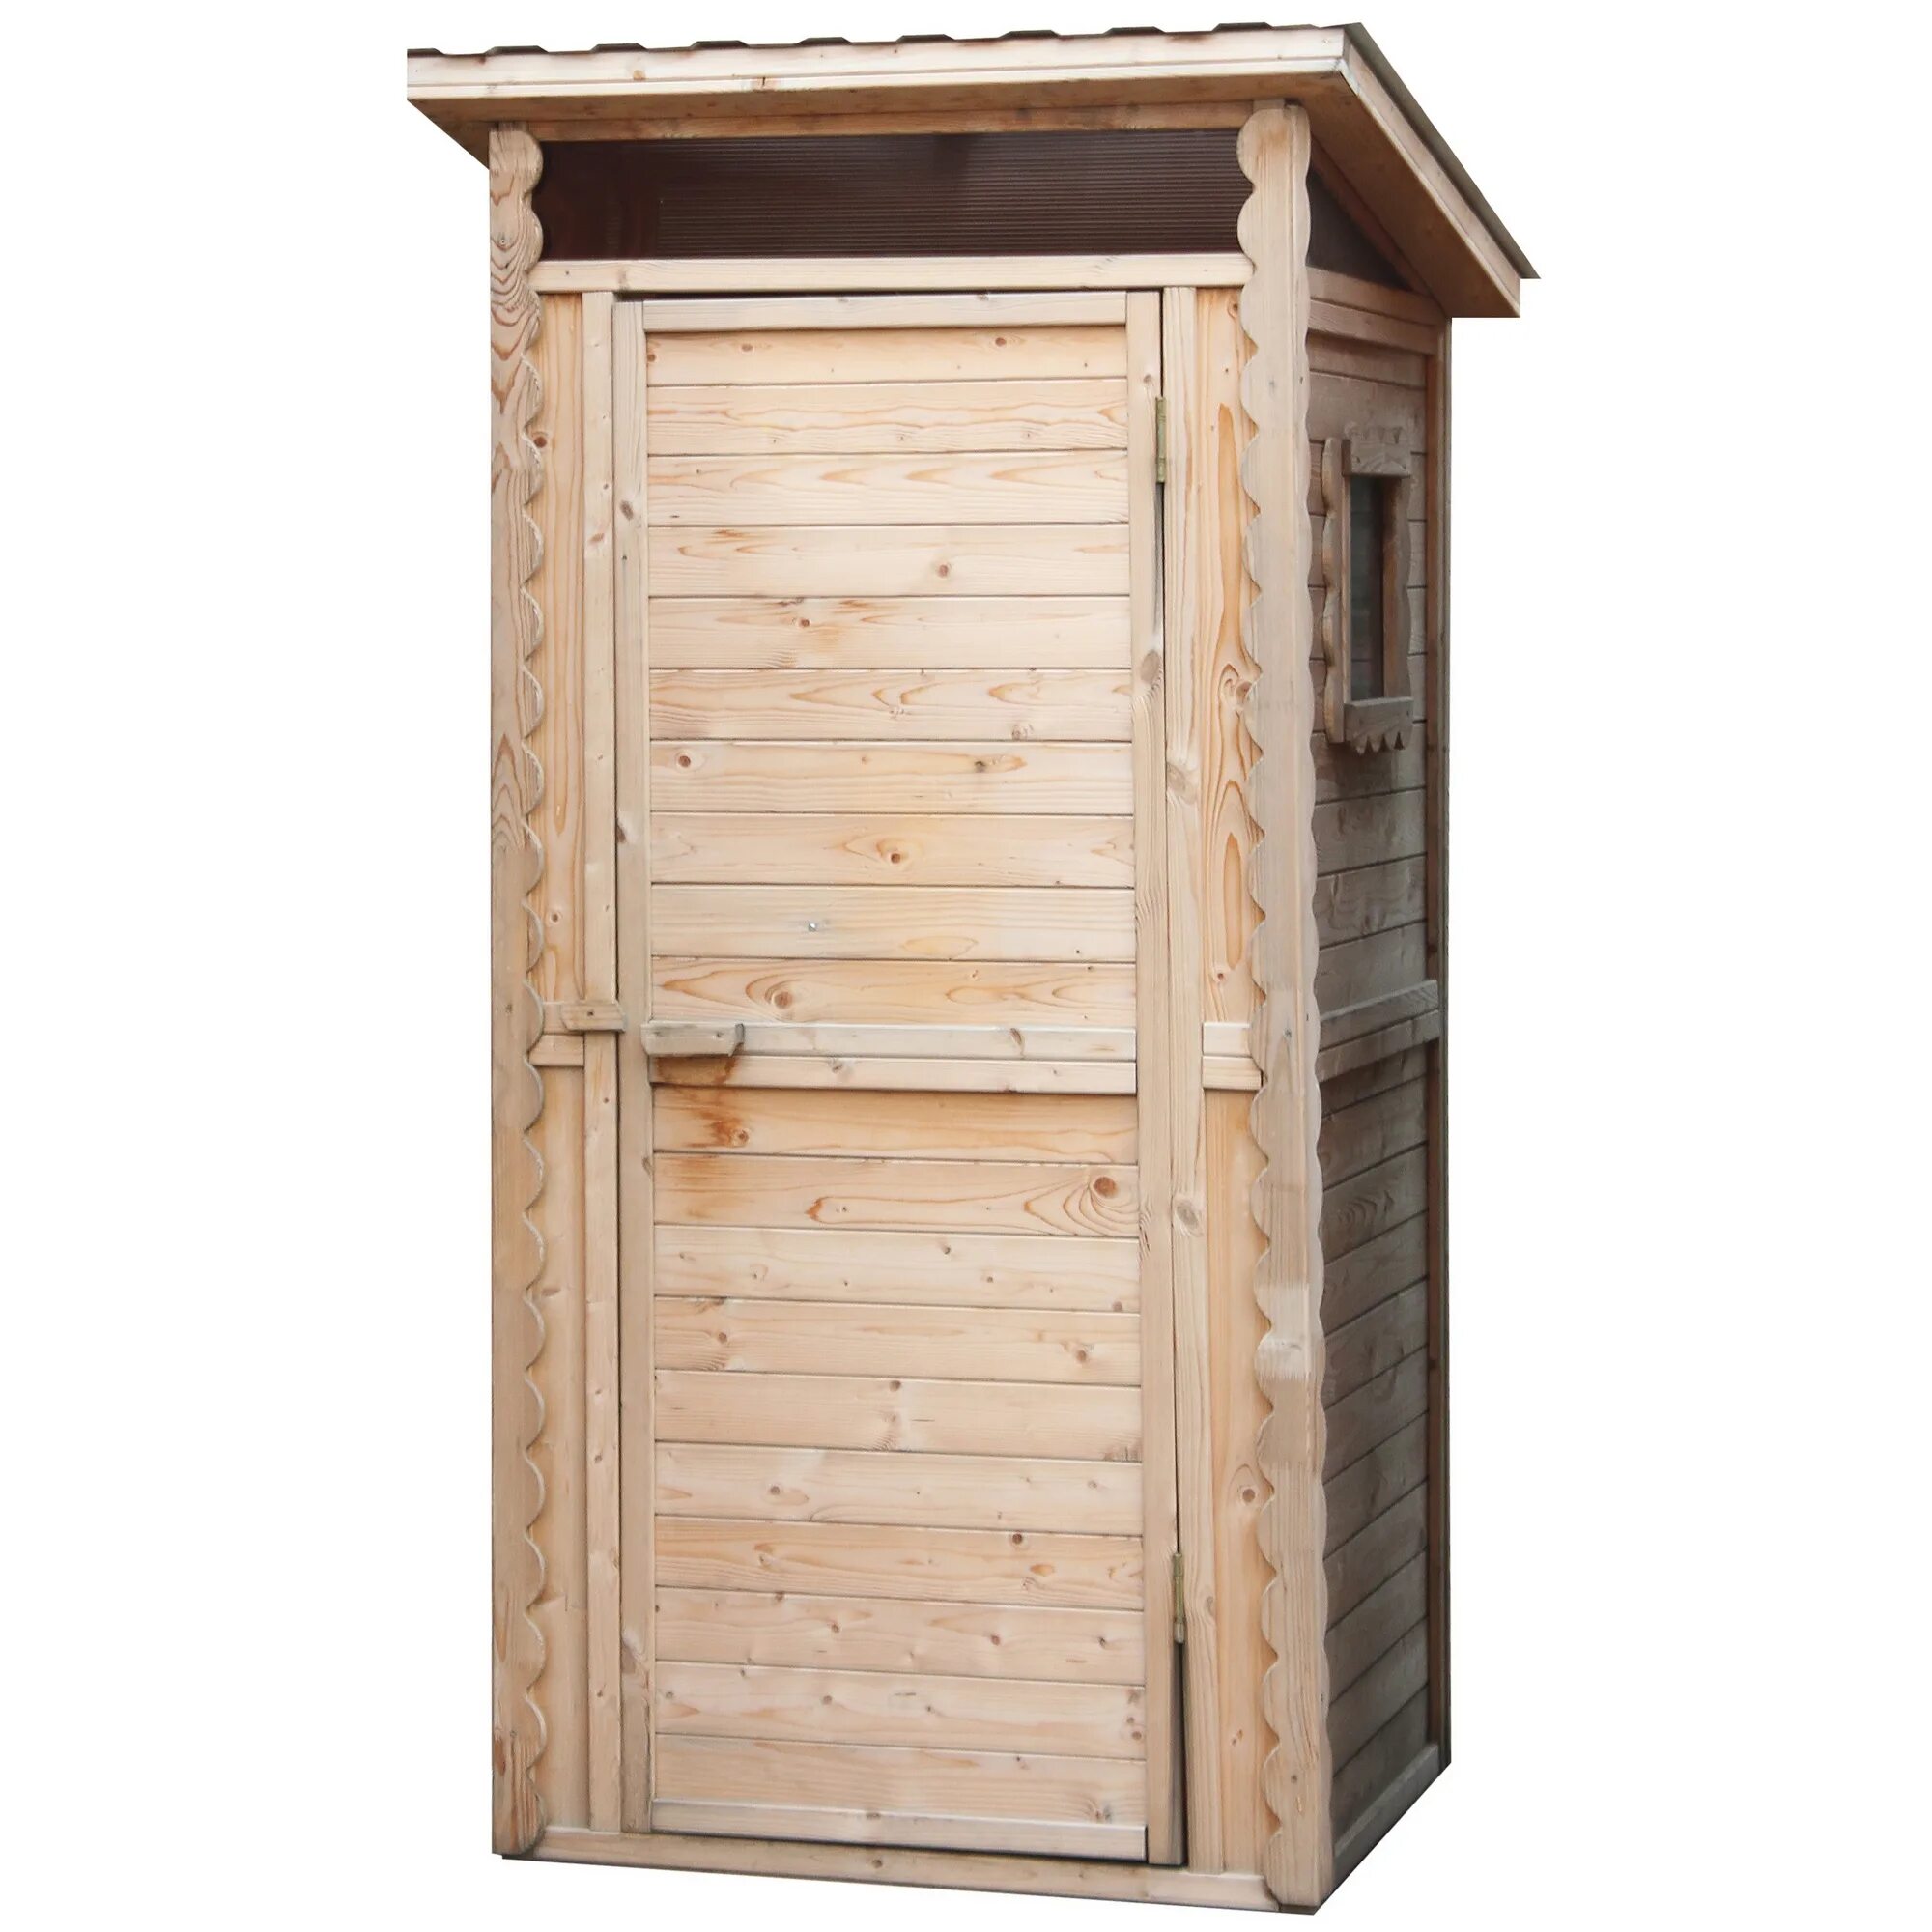 Деревянный туалет купить дешево. Дачный туалет 1мх1м. Туалет дачный 1х1.2. Дачные туалеты в Леруа Мерлен. Уличный туалет Леруа Мерлен.